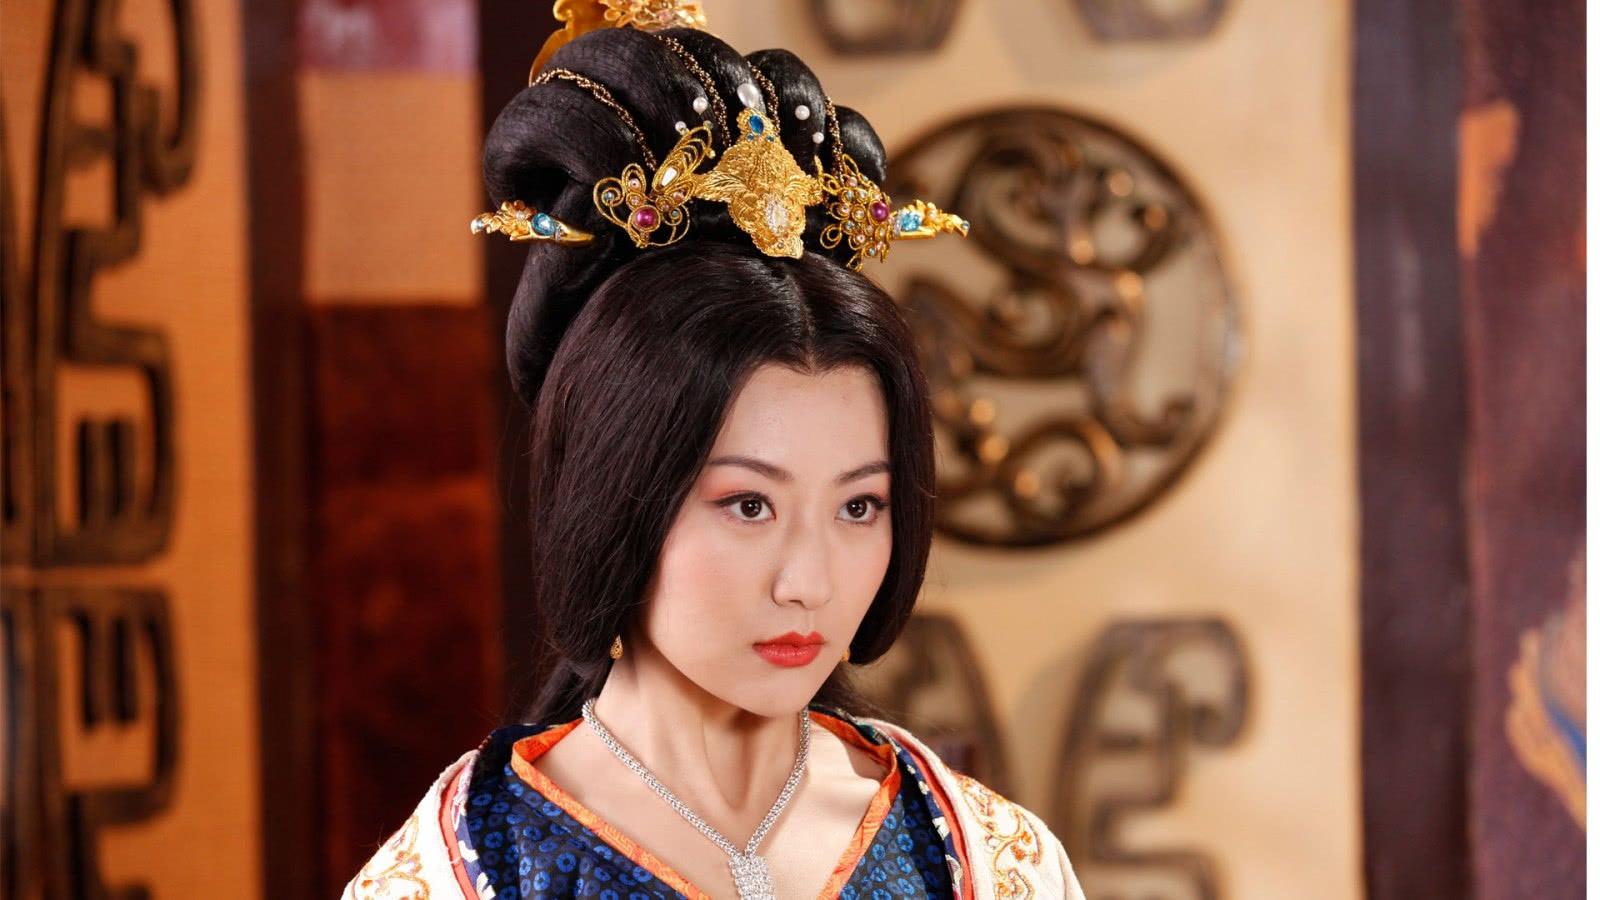 Mỹ nhân Trung Hoa “ngồi trên” cả hoàng đế, bị chém đầu vì quá xinh đẹp - 1